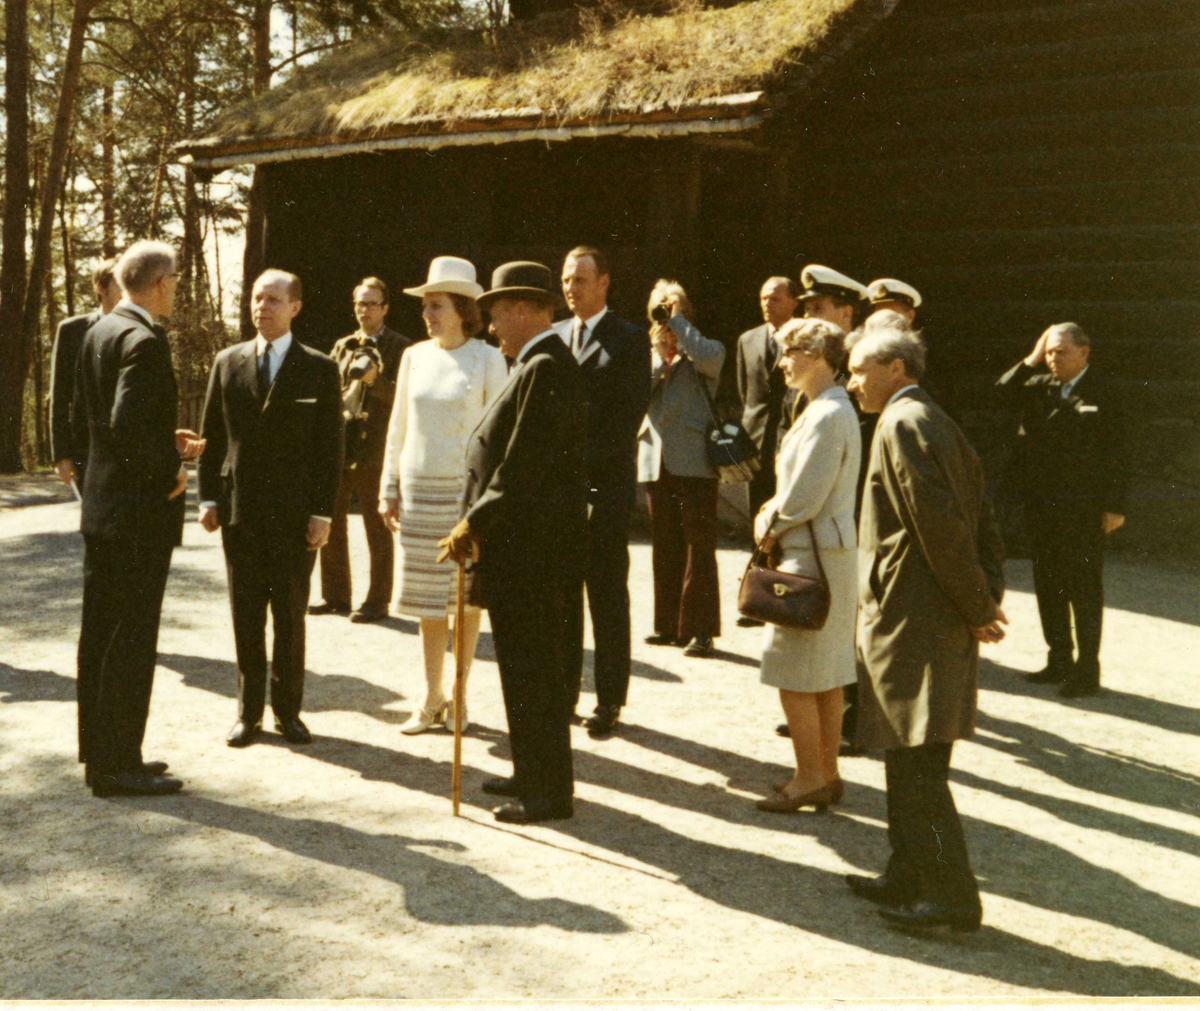 Islands president besøker NF 4/5 1971. Direktør Reidar Kjellberg orienterer foran Hovestua.